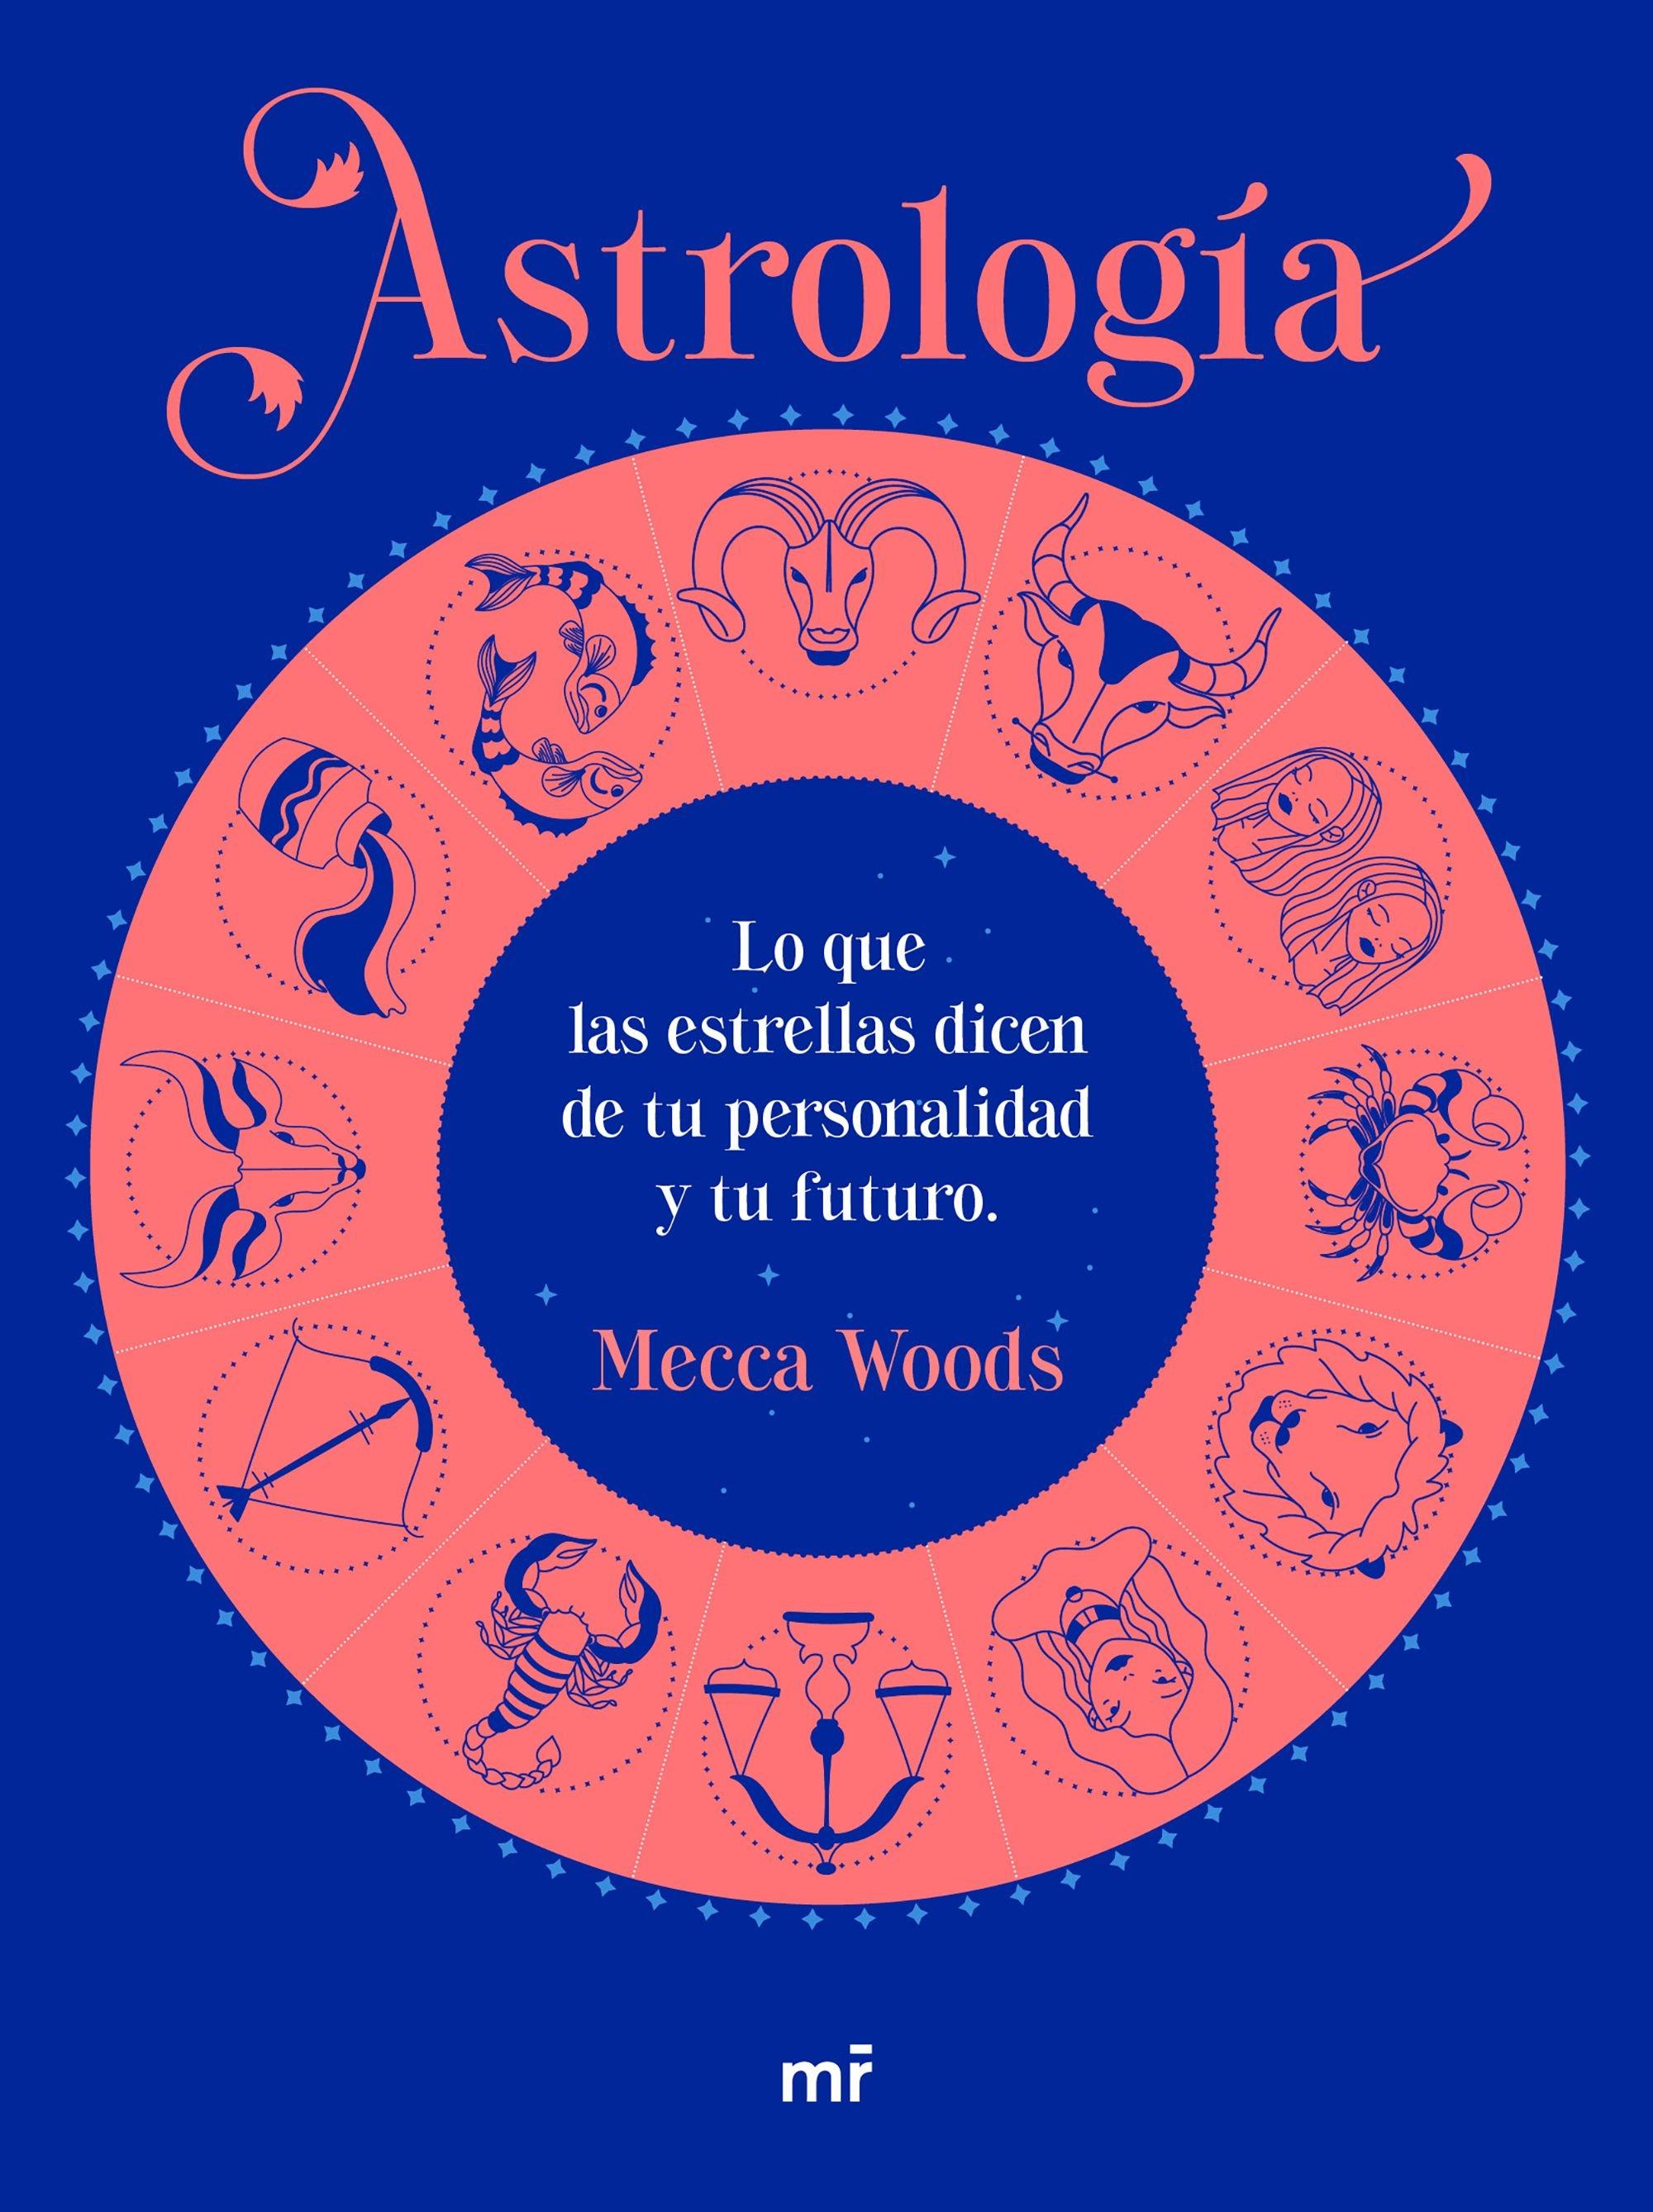 Astrología "Lo que las estrellas dicen de tu personalidad y tu futuro"